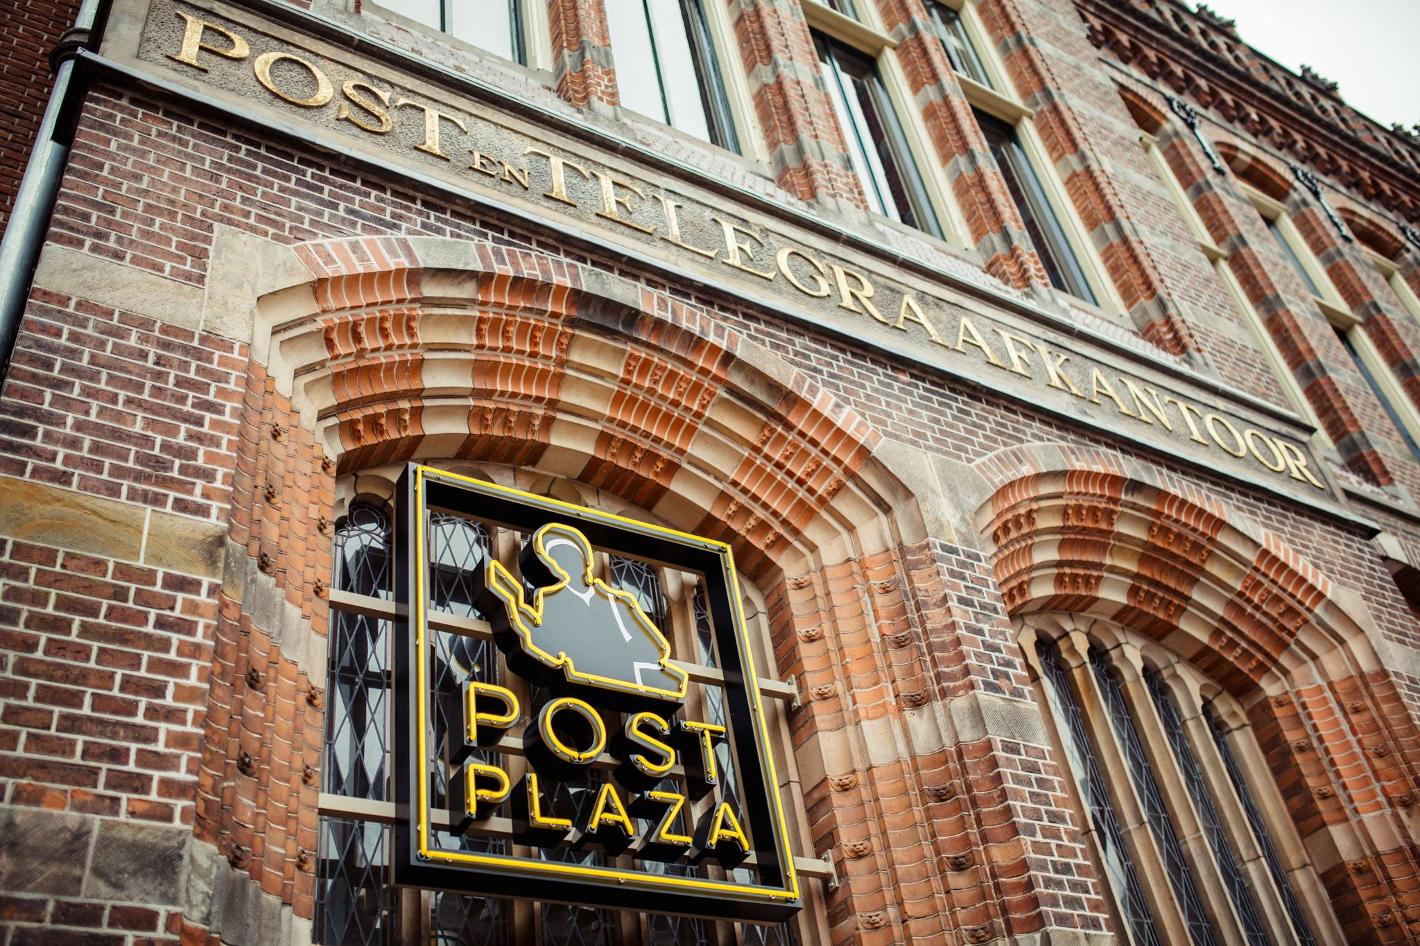 Photo Post-Plaza Hotel & Grand Café en Leeuwarden, Dormir, Hôtels & logement - #1